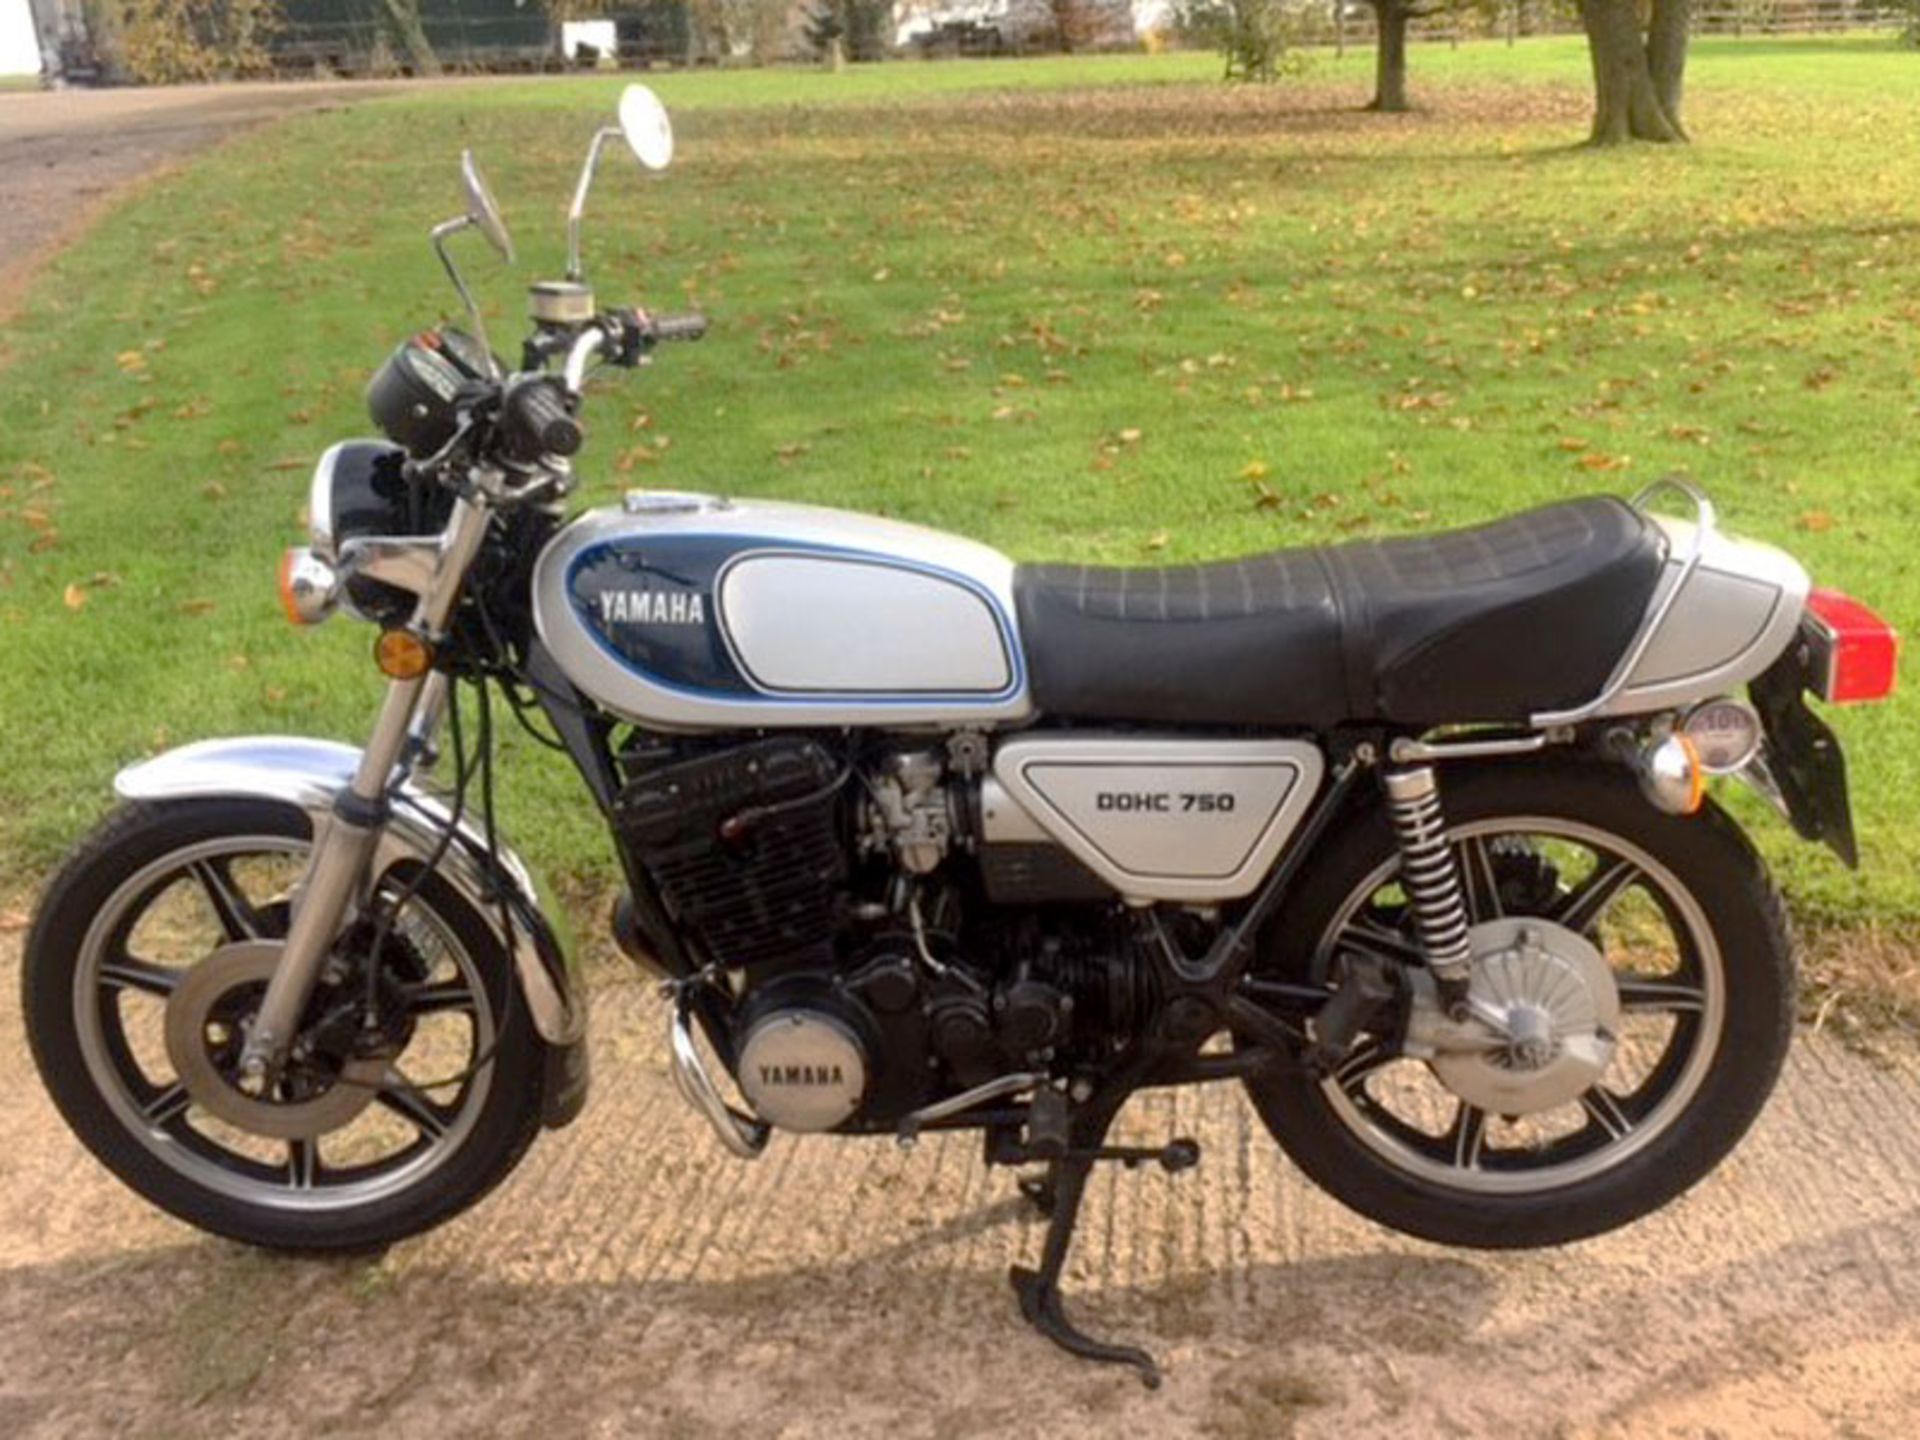 1977 Yamaha XS750 - Image 2 of 3